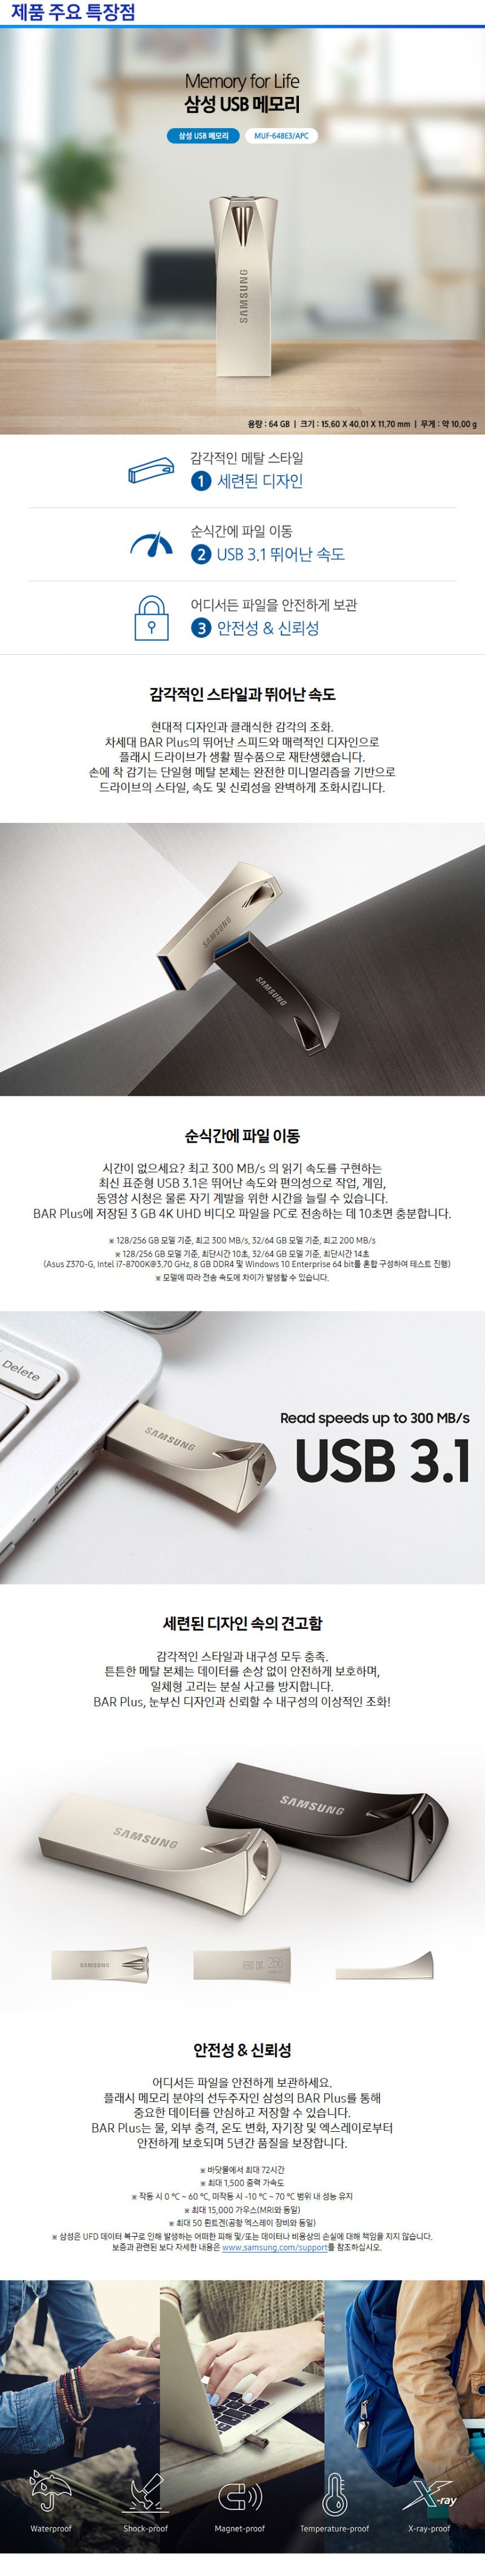 선택1 / 002 삼성 USB 3.1 BAR PLUS 골드색상